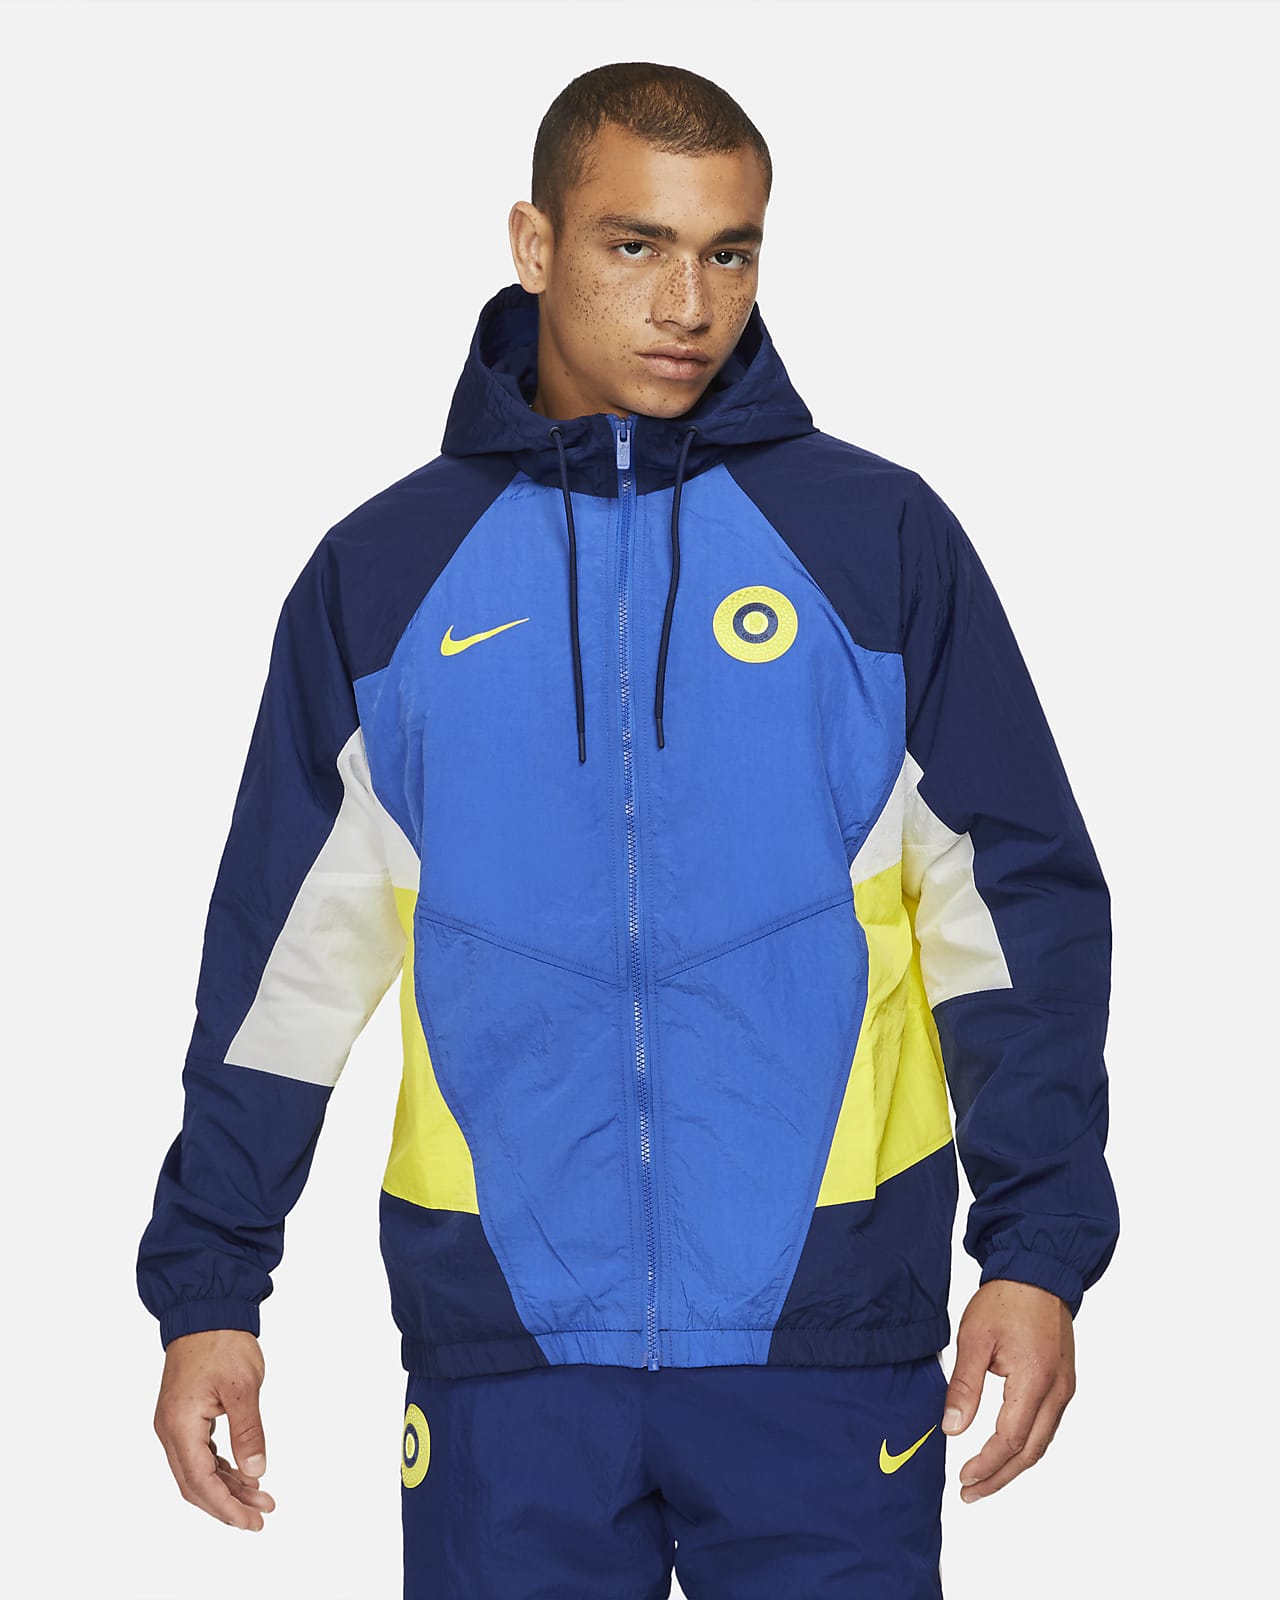 Gelukkig Kreek Desillusie Chelsea FC Windrunner Men's Woven Soccer Jacket. Nike.com